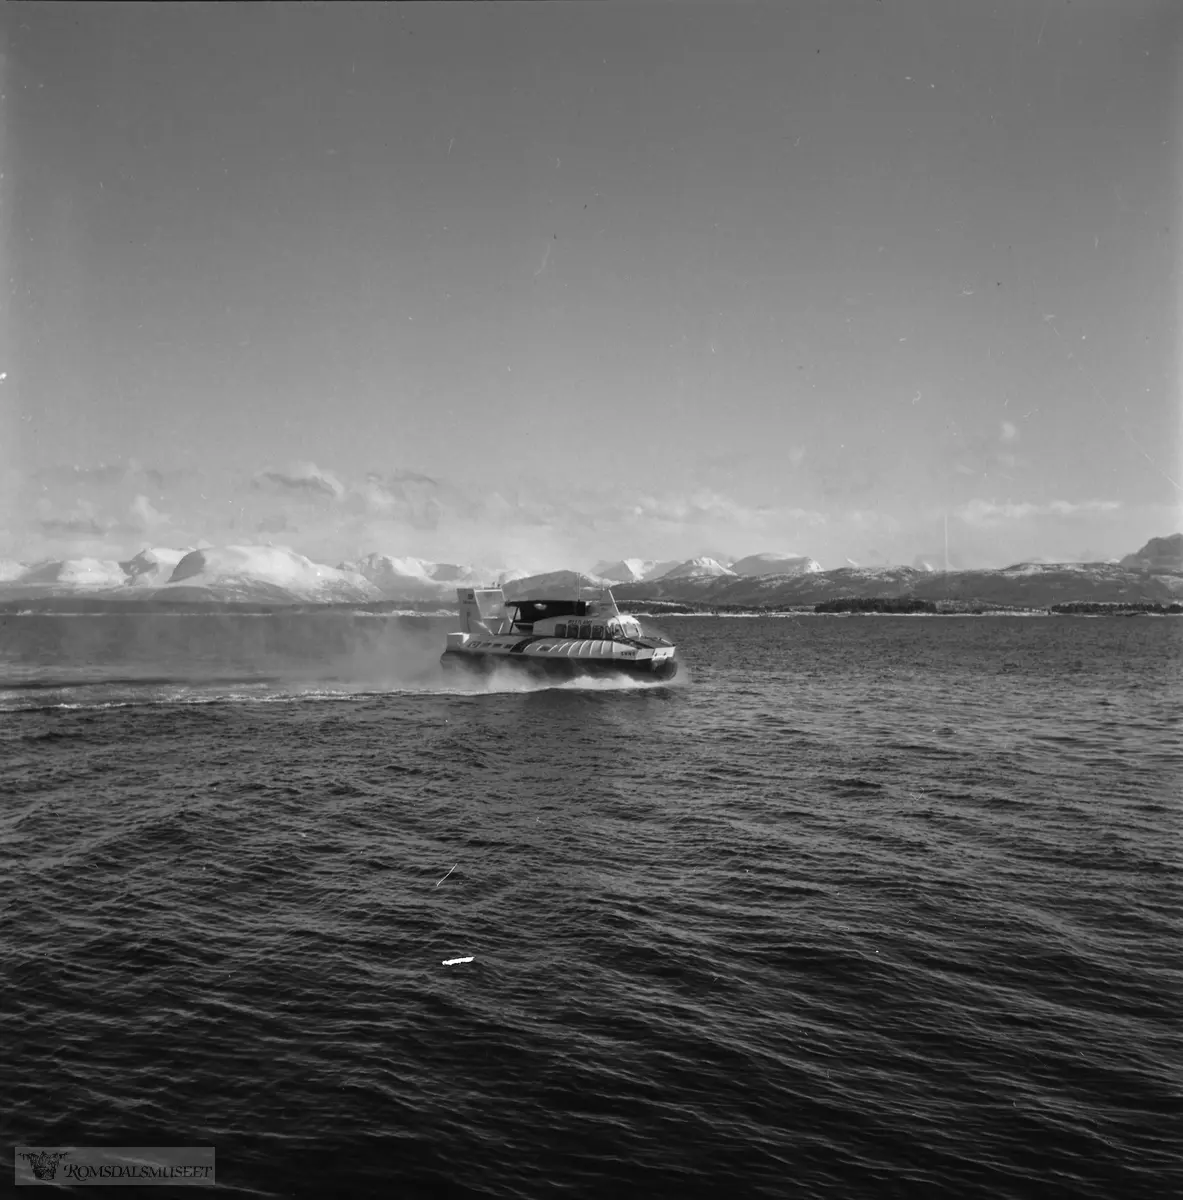 Luftputebåten sitt første besøk i Molde, Mars/April 1965.